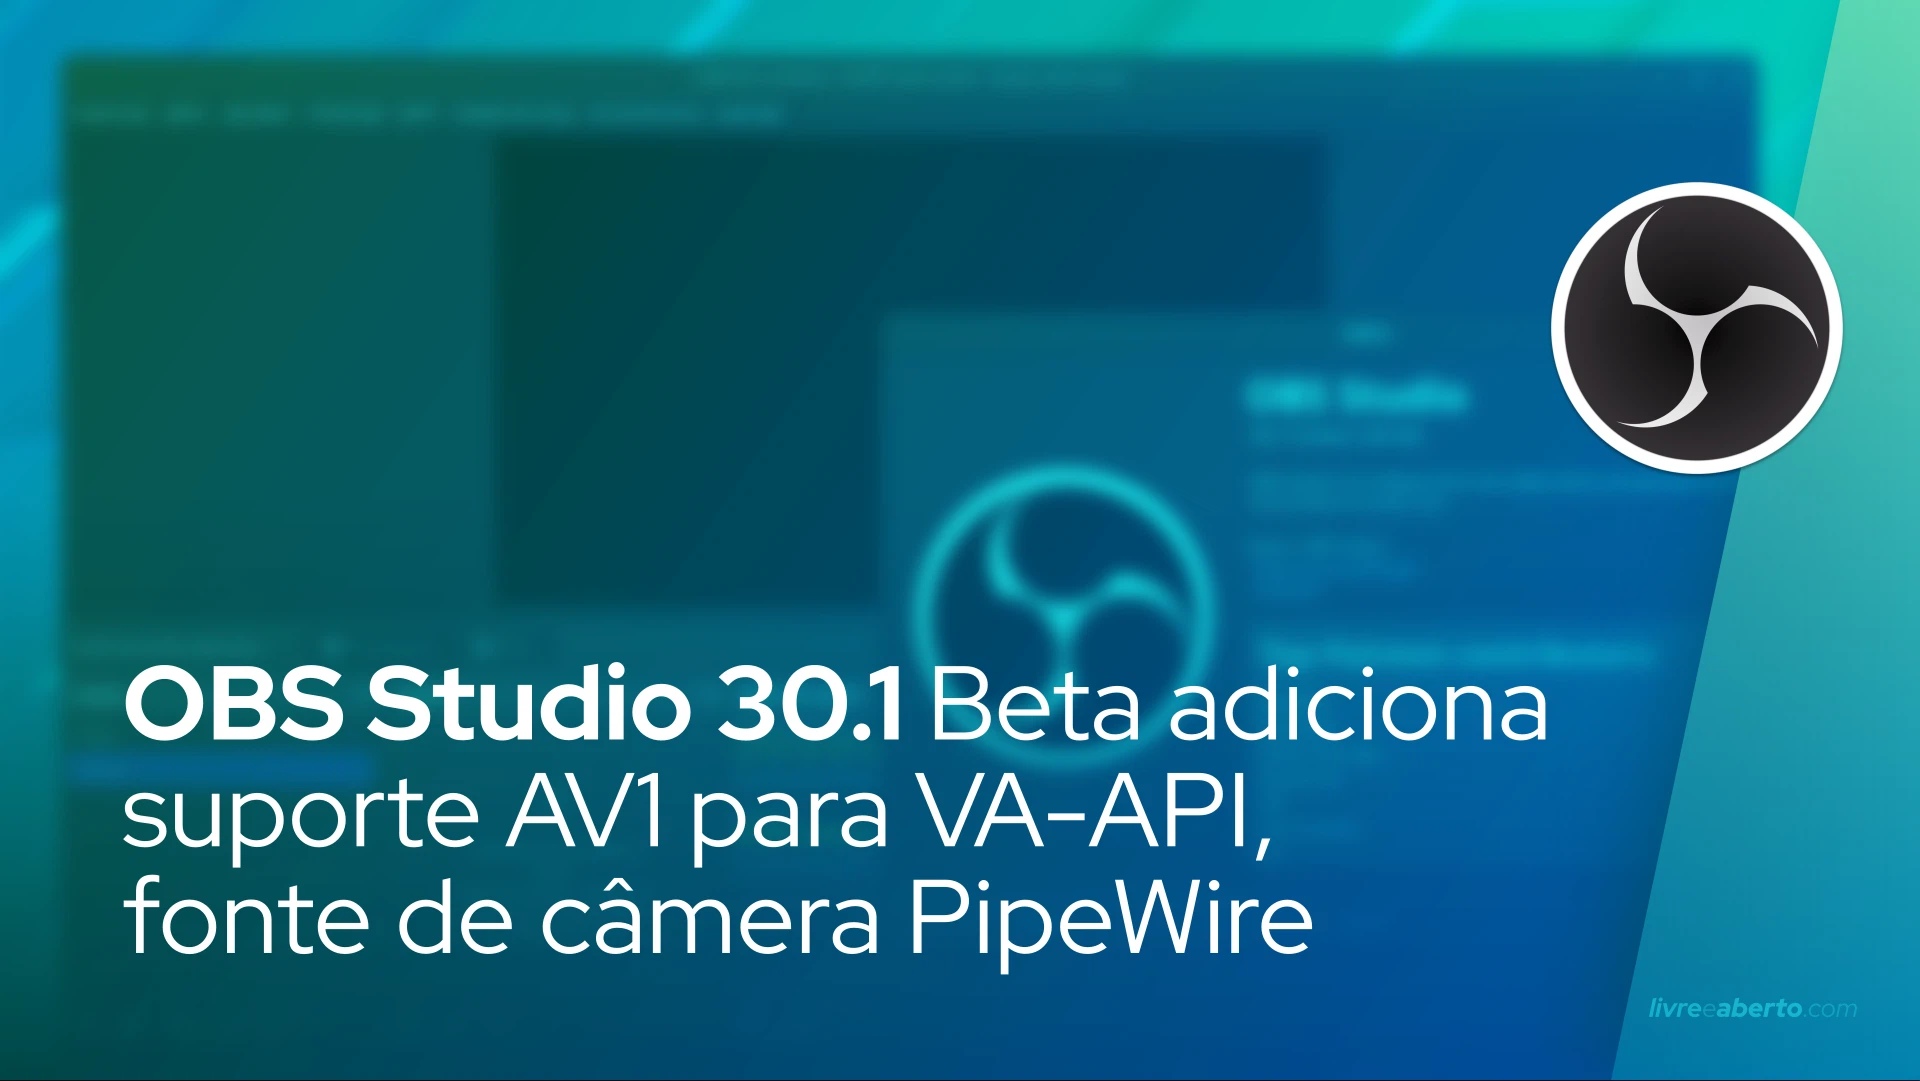 OBS Studio 30.1 Beta adiciona suporte AV1 para VA-API, fonte de câmera PipeWire